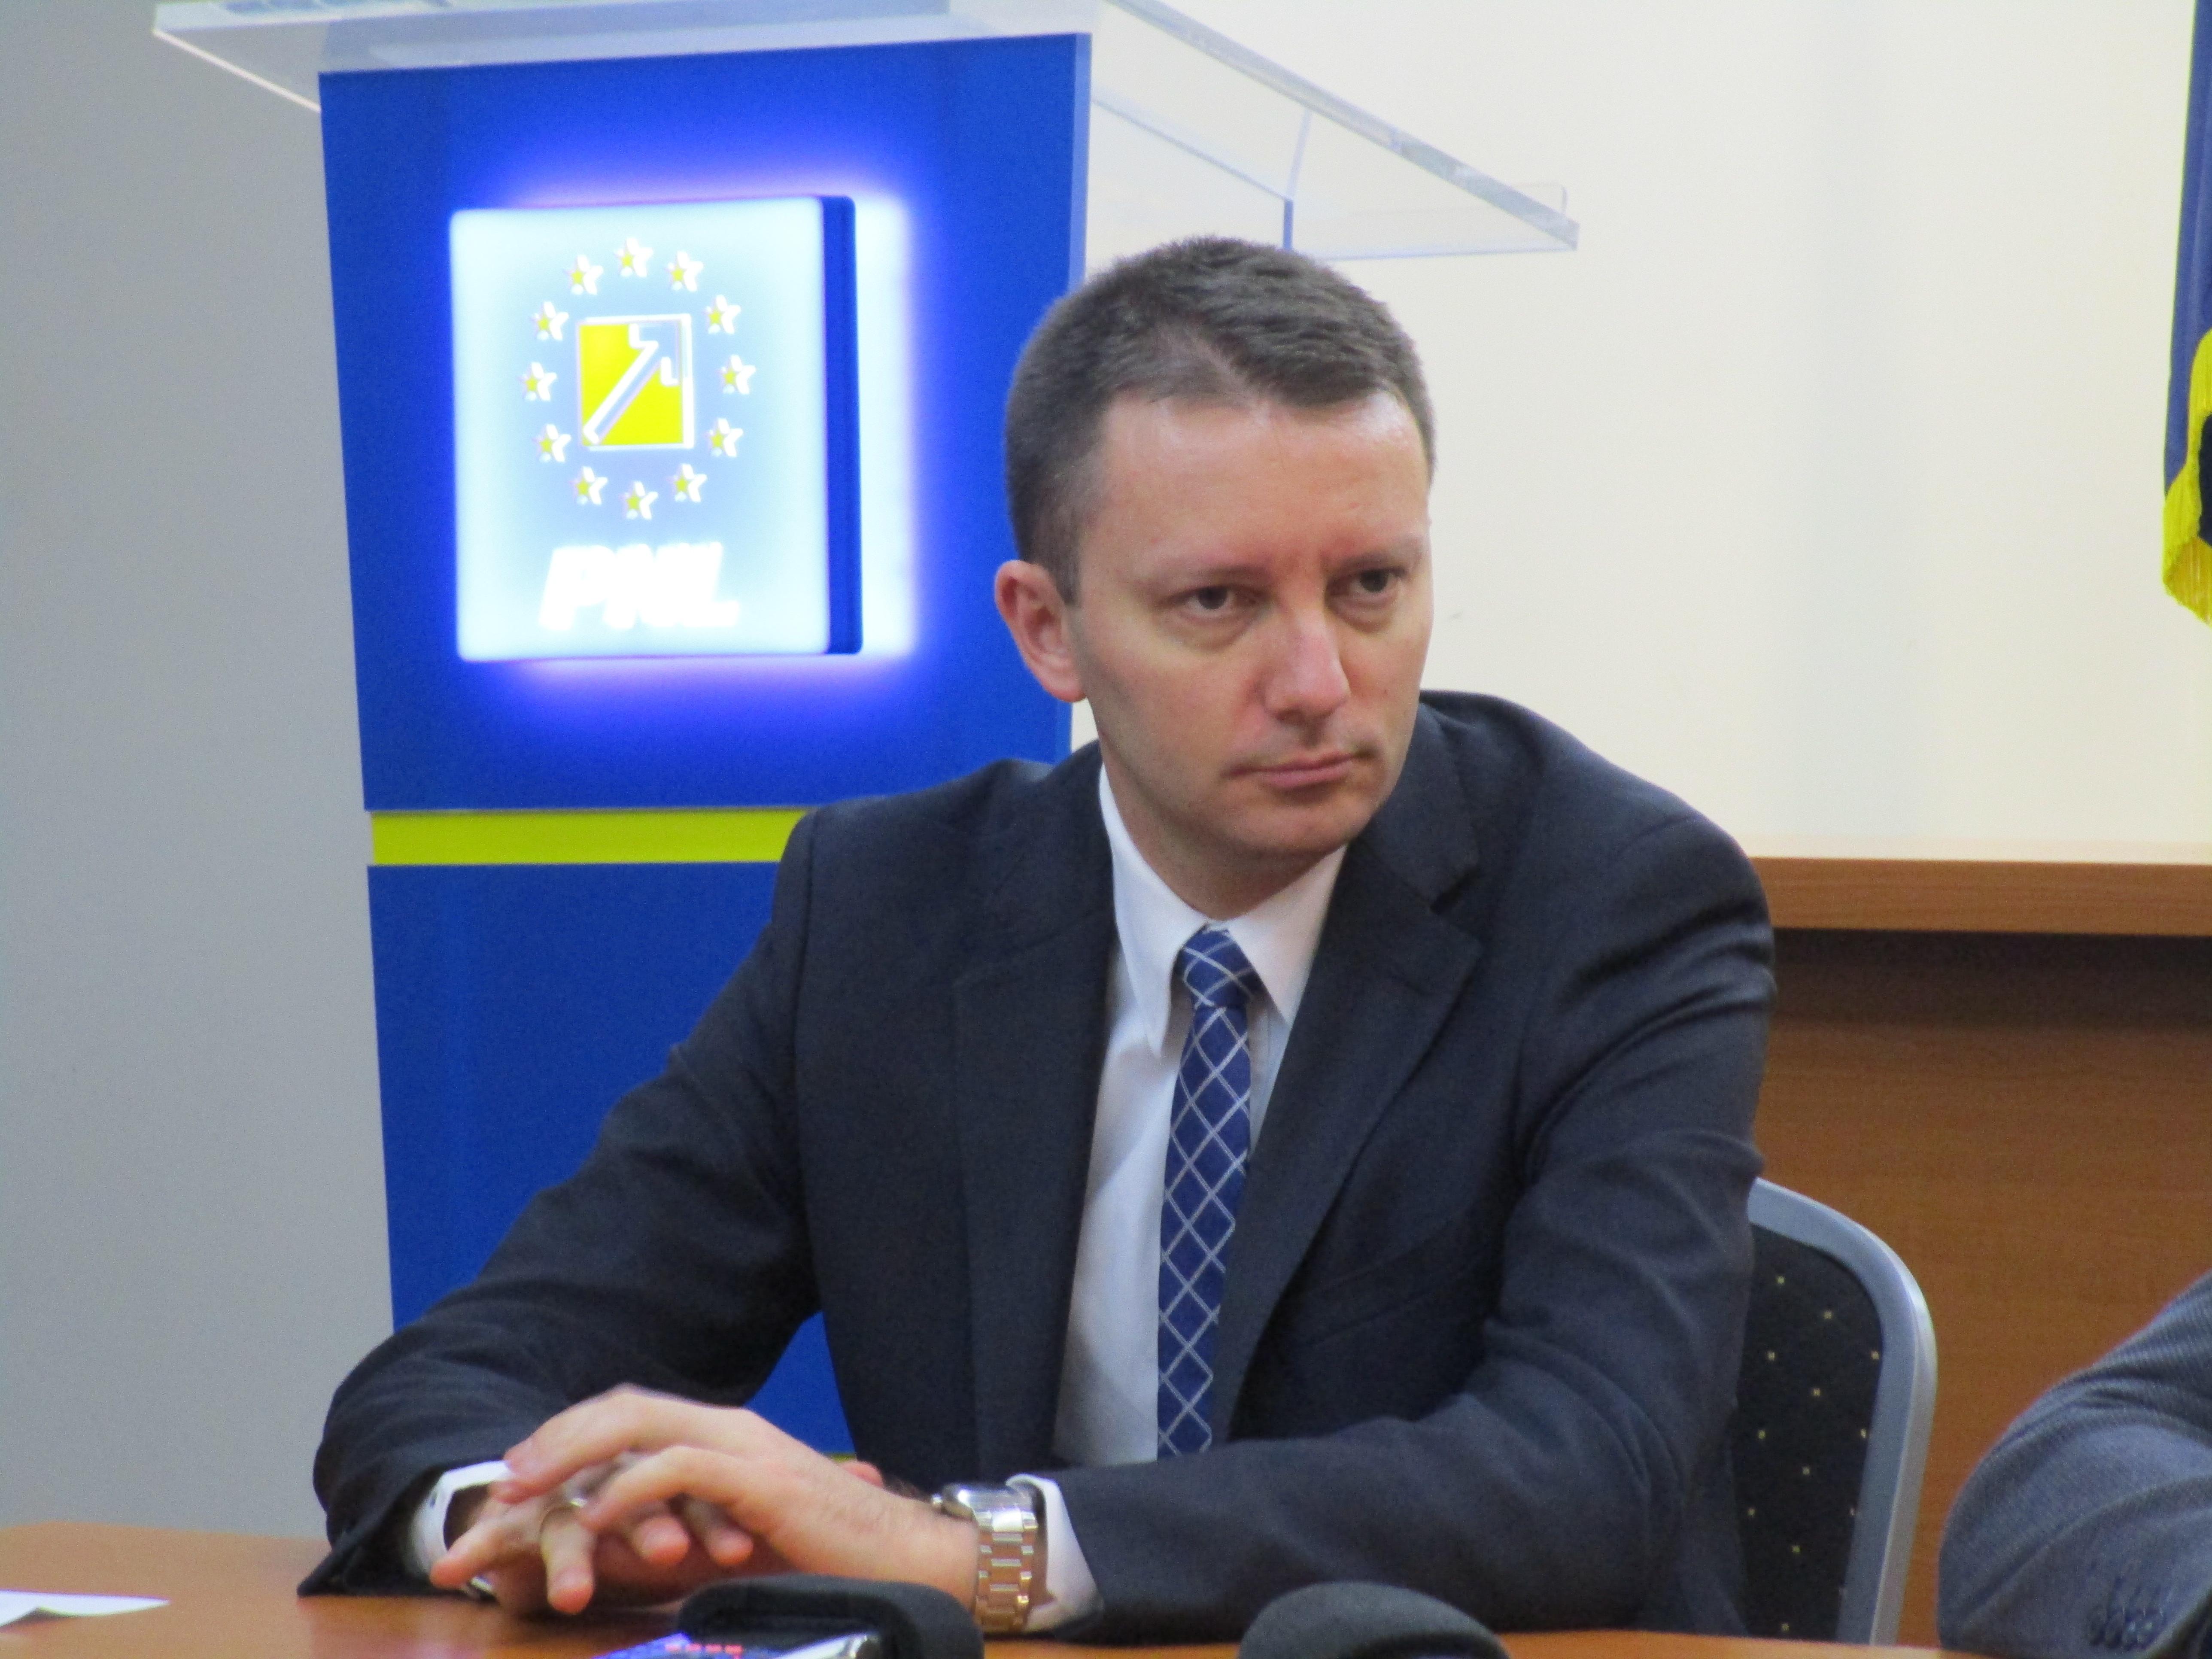 Siegfried Mureşan cere guvernului României să negocieze o funcţie de vicepreşedinte al Comisiei Europene